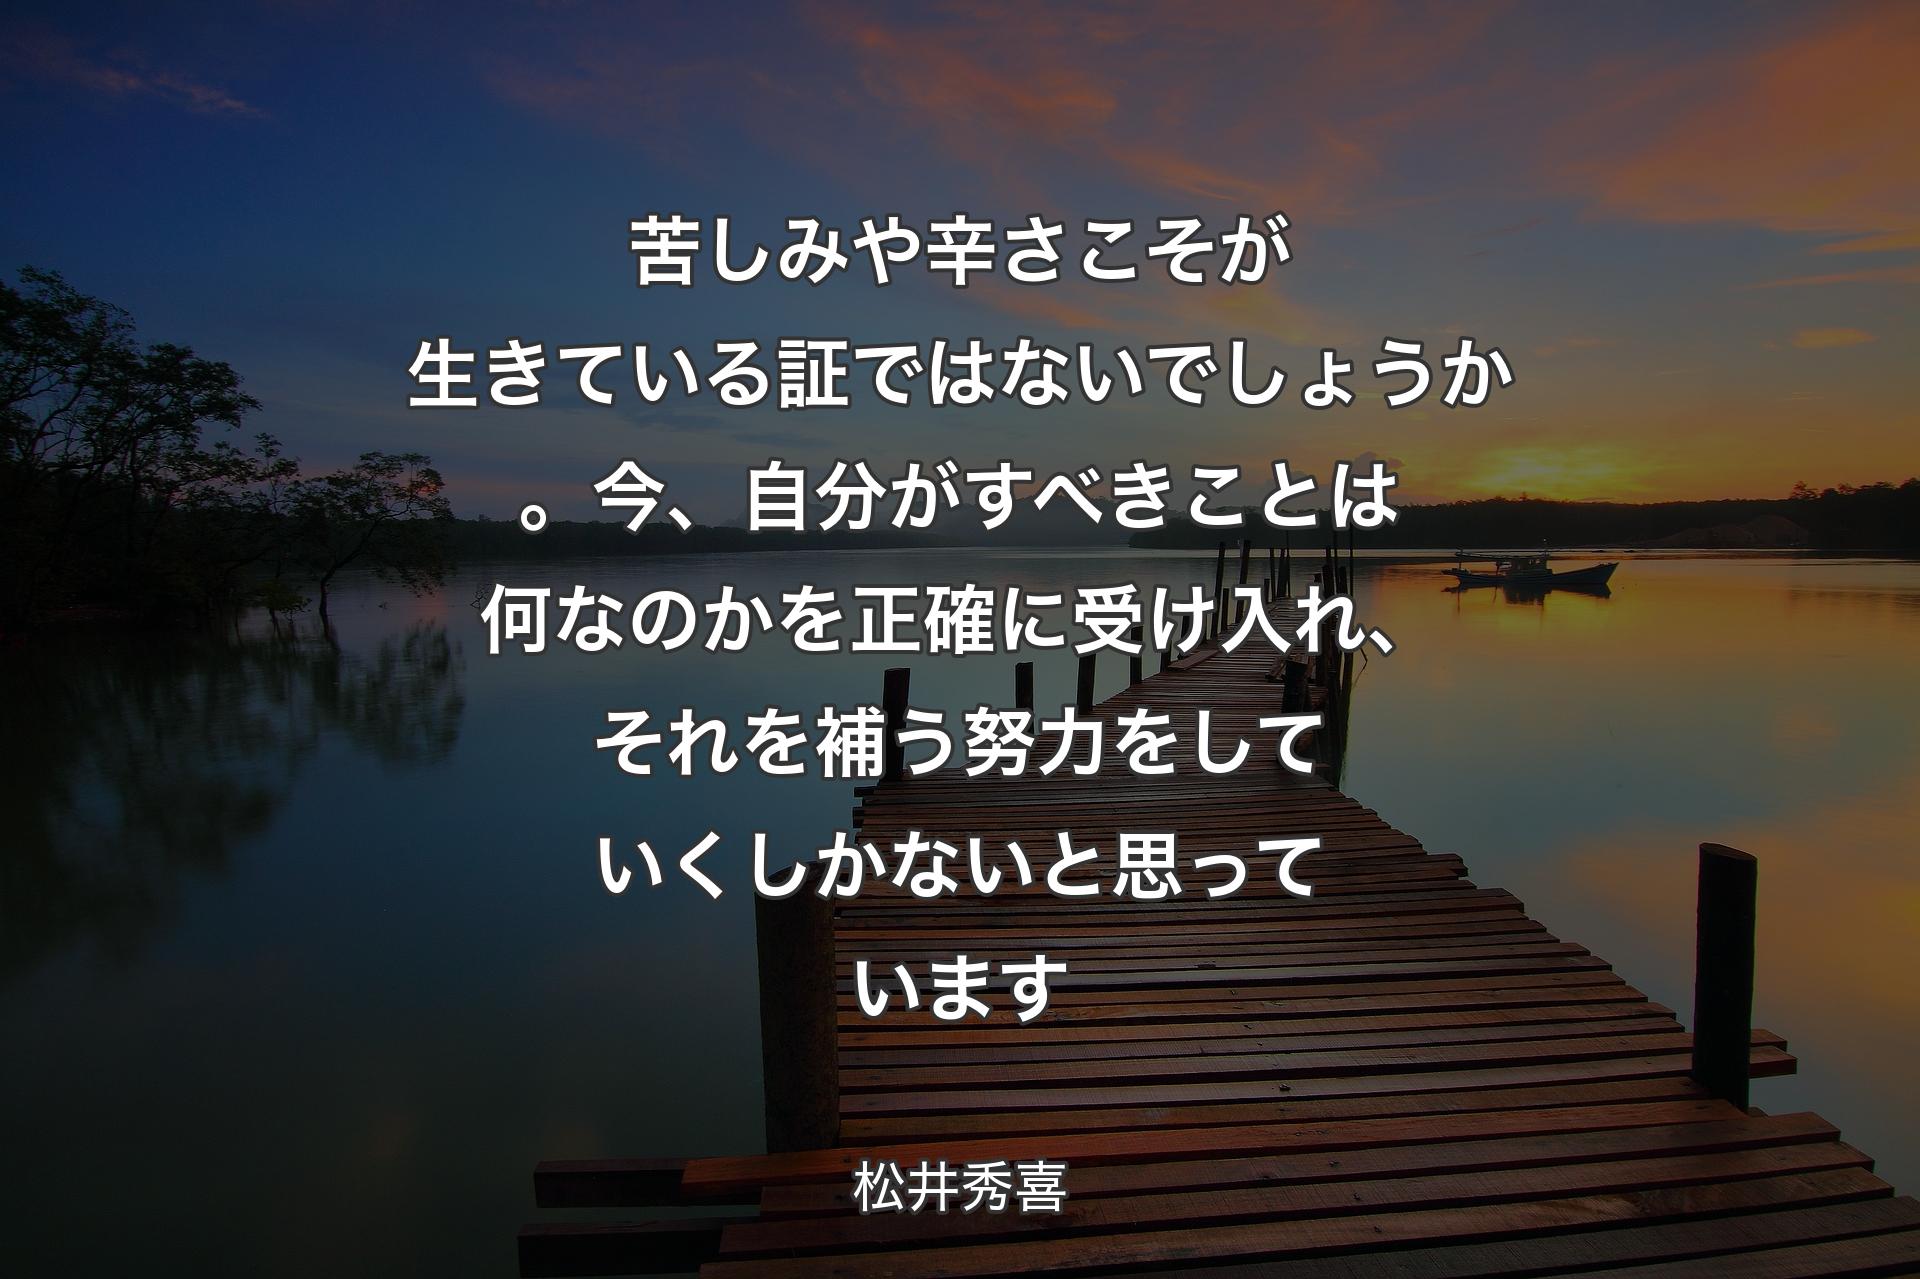 【背景3】苦しみや辛さこそが生きている証ではないでしょうか。今、自分がすべきことは何なのかを正確に受け入れ、それを補う努力をしていくしかないと思っています - 松井秀喜